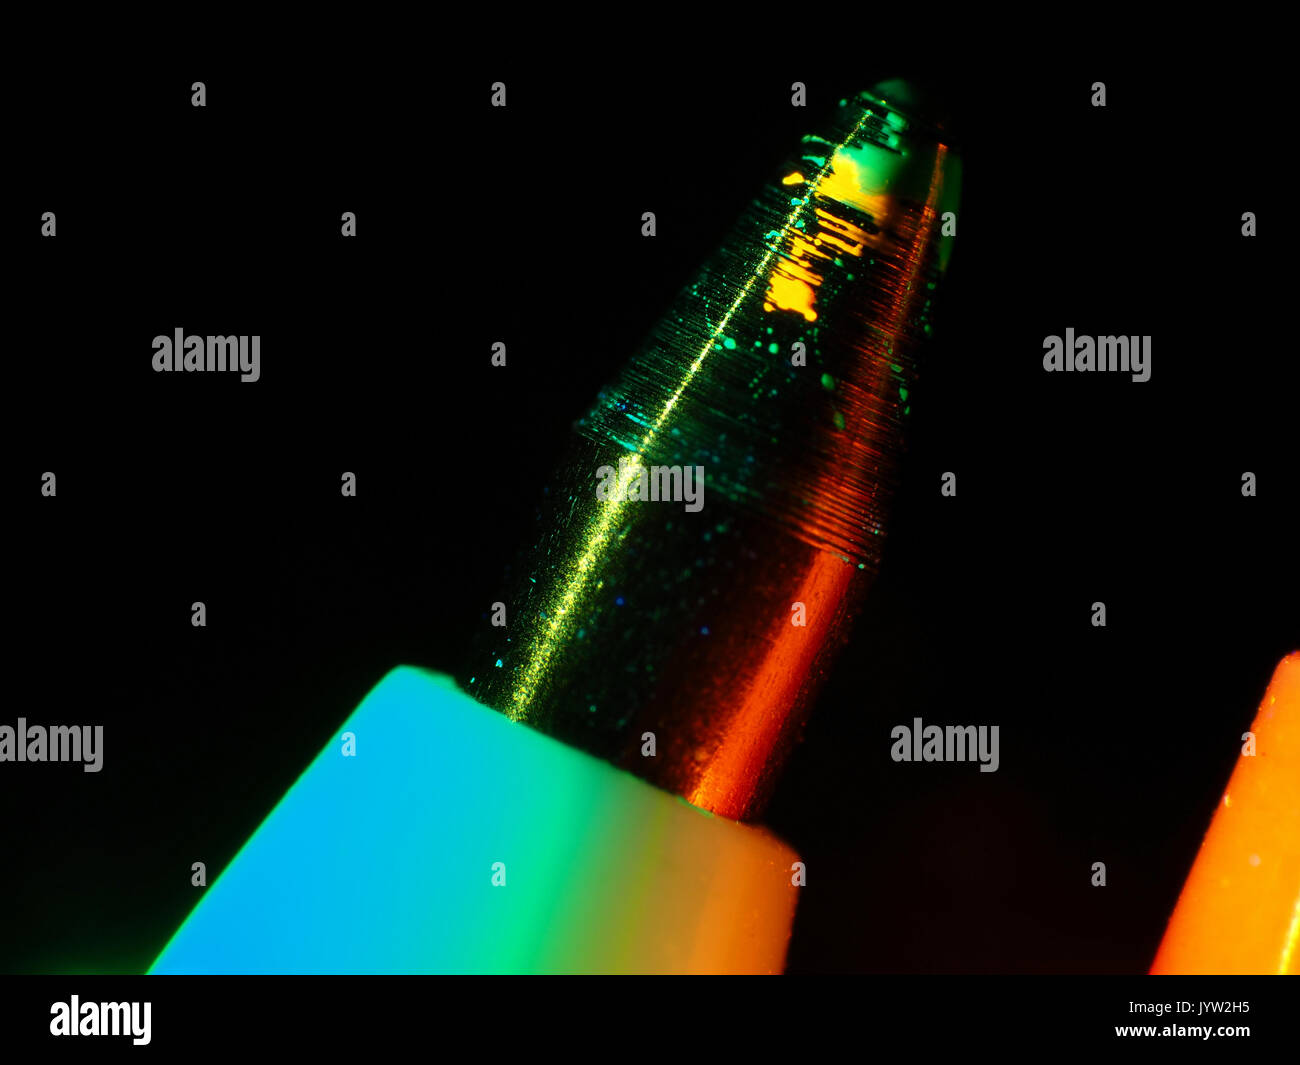 Uv-Licht reflektiert Schliffbild eines fluoreszierenden Kugelschreiber Tipp, dargestellt, ca. 8,5 mm breit Stockfoto